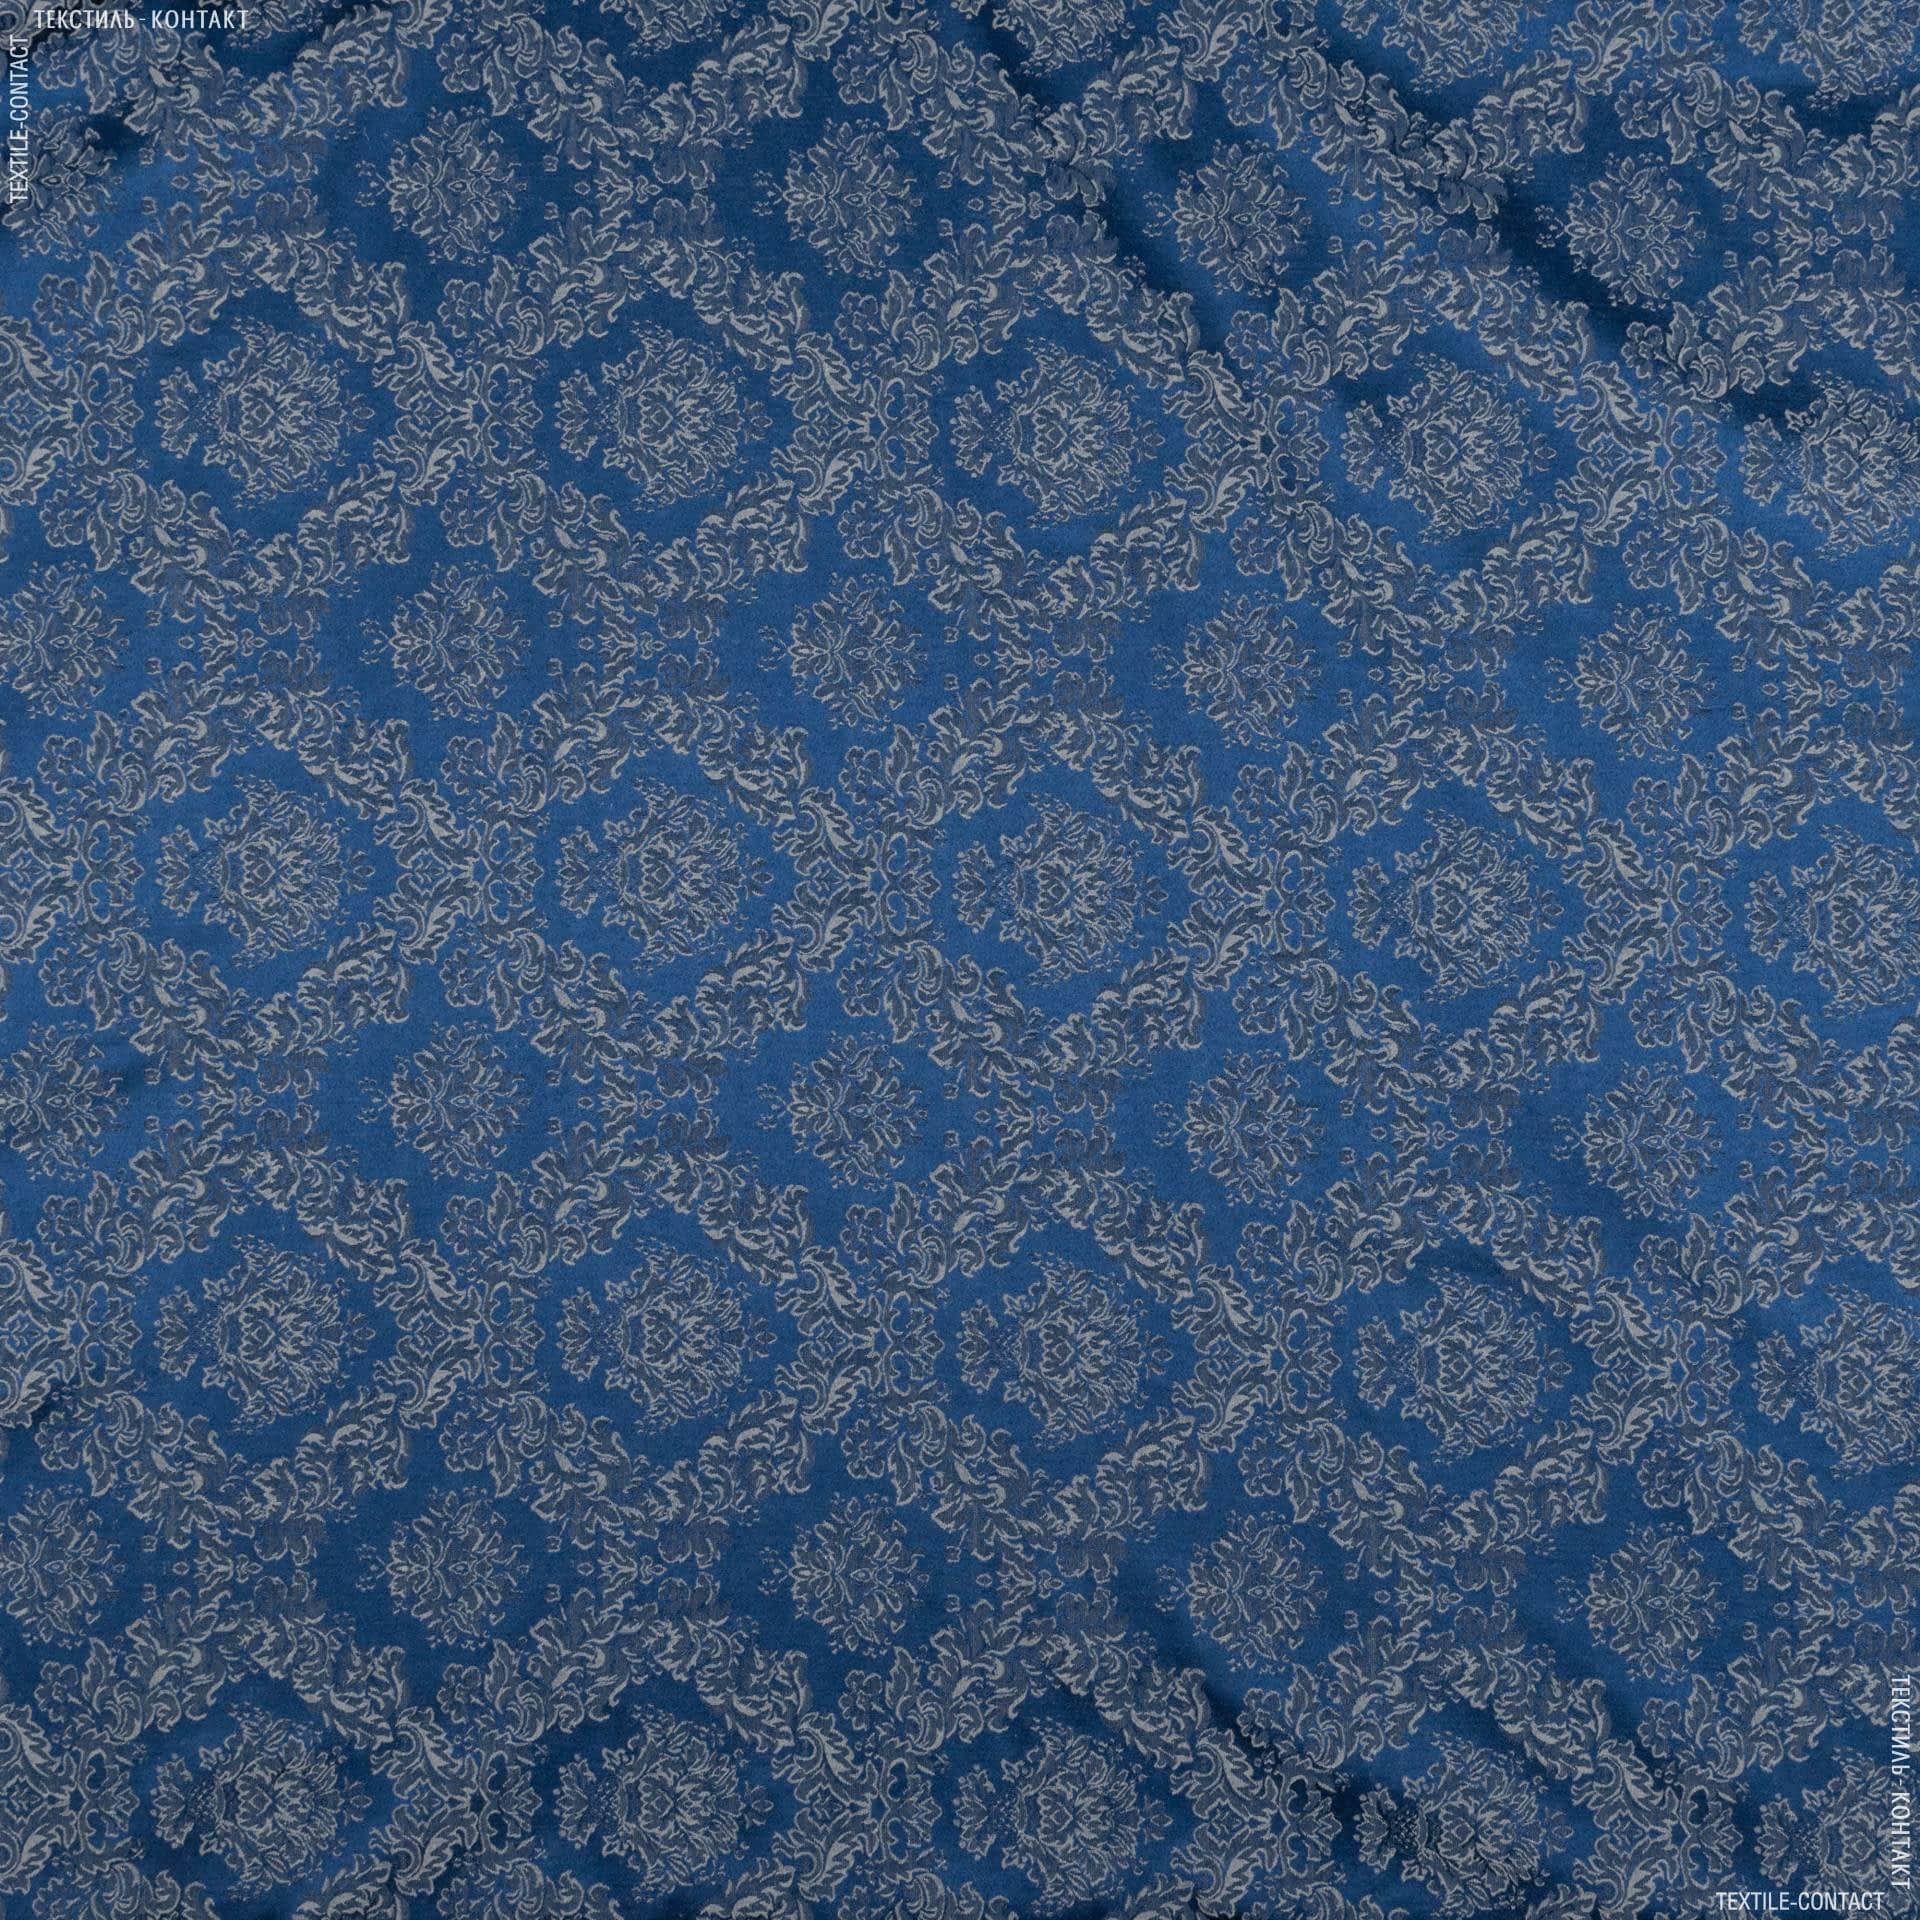 Ткани для штор - Портьерная ткань ампир синий